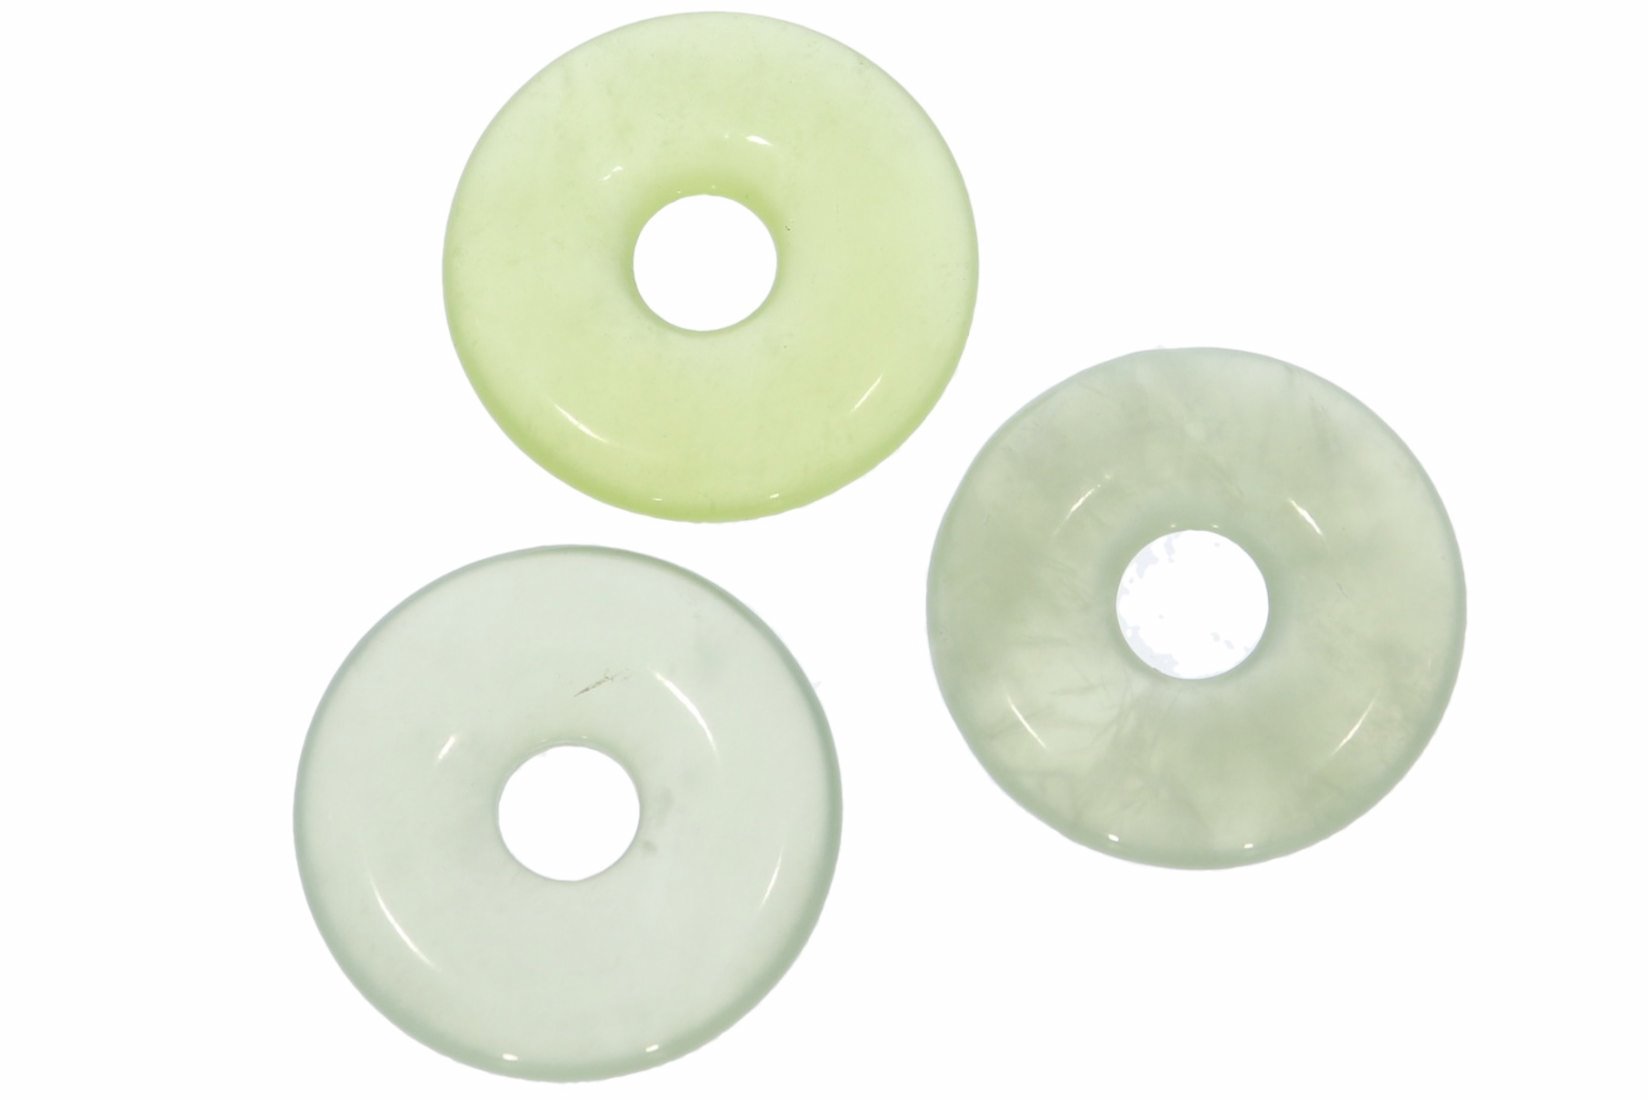 China Jade Donut Schmuck Anhänger 20mm & Donut Halter Silber HS1595